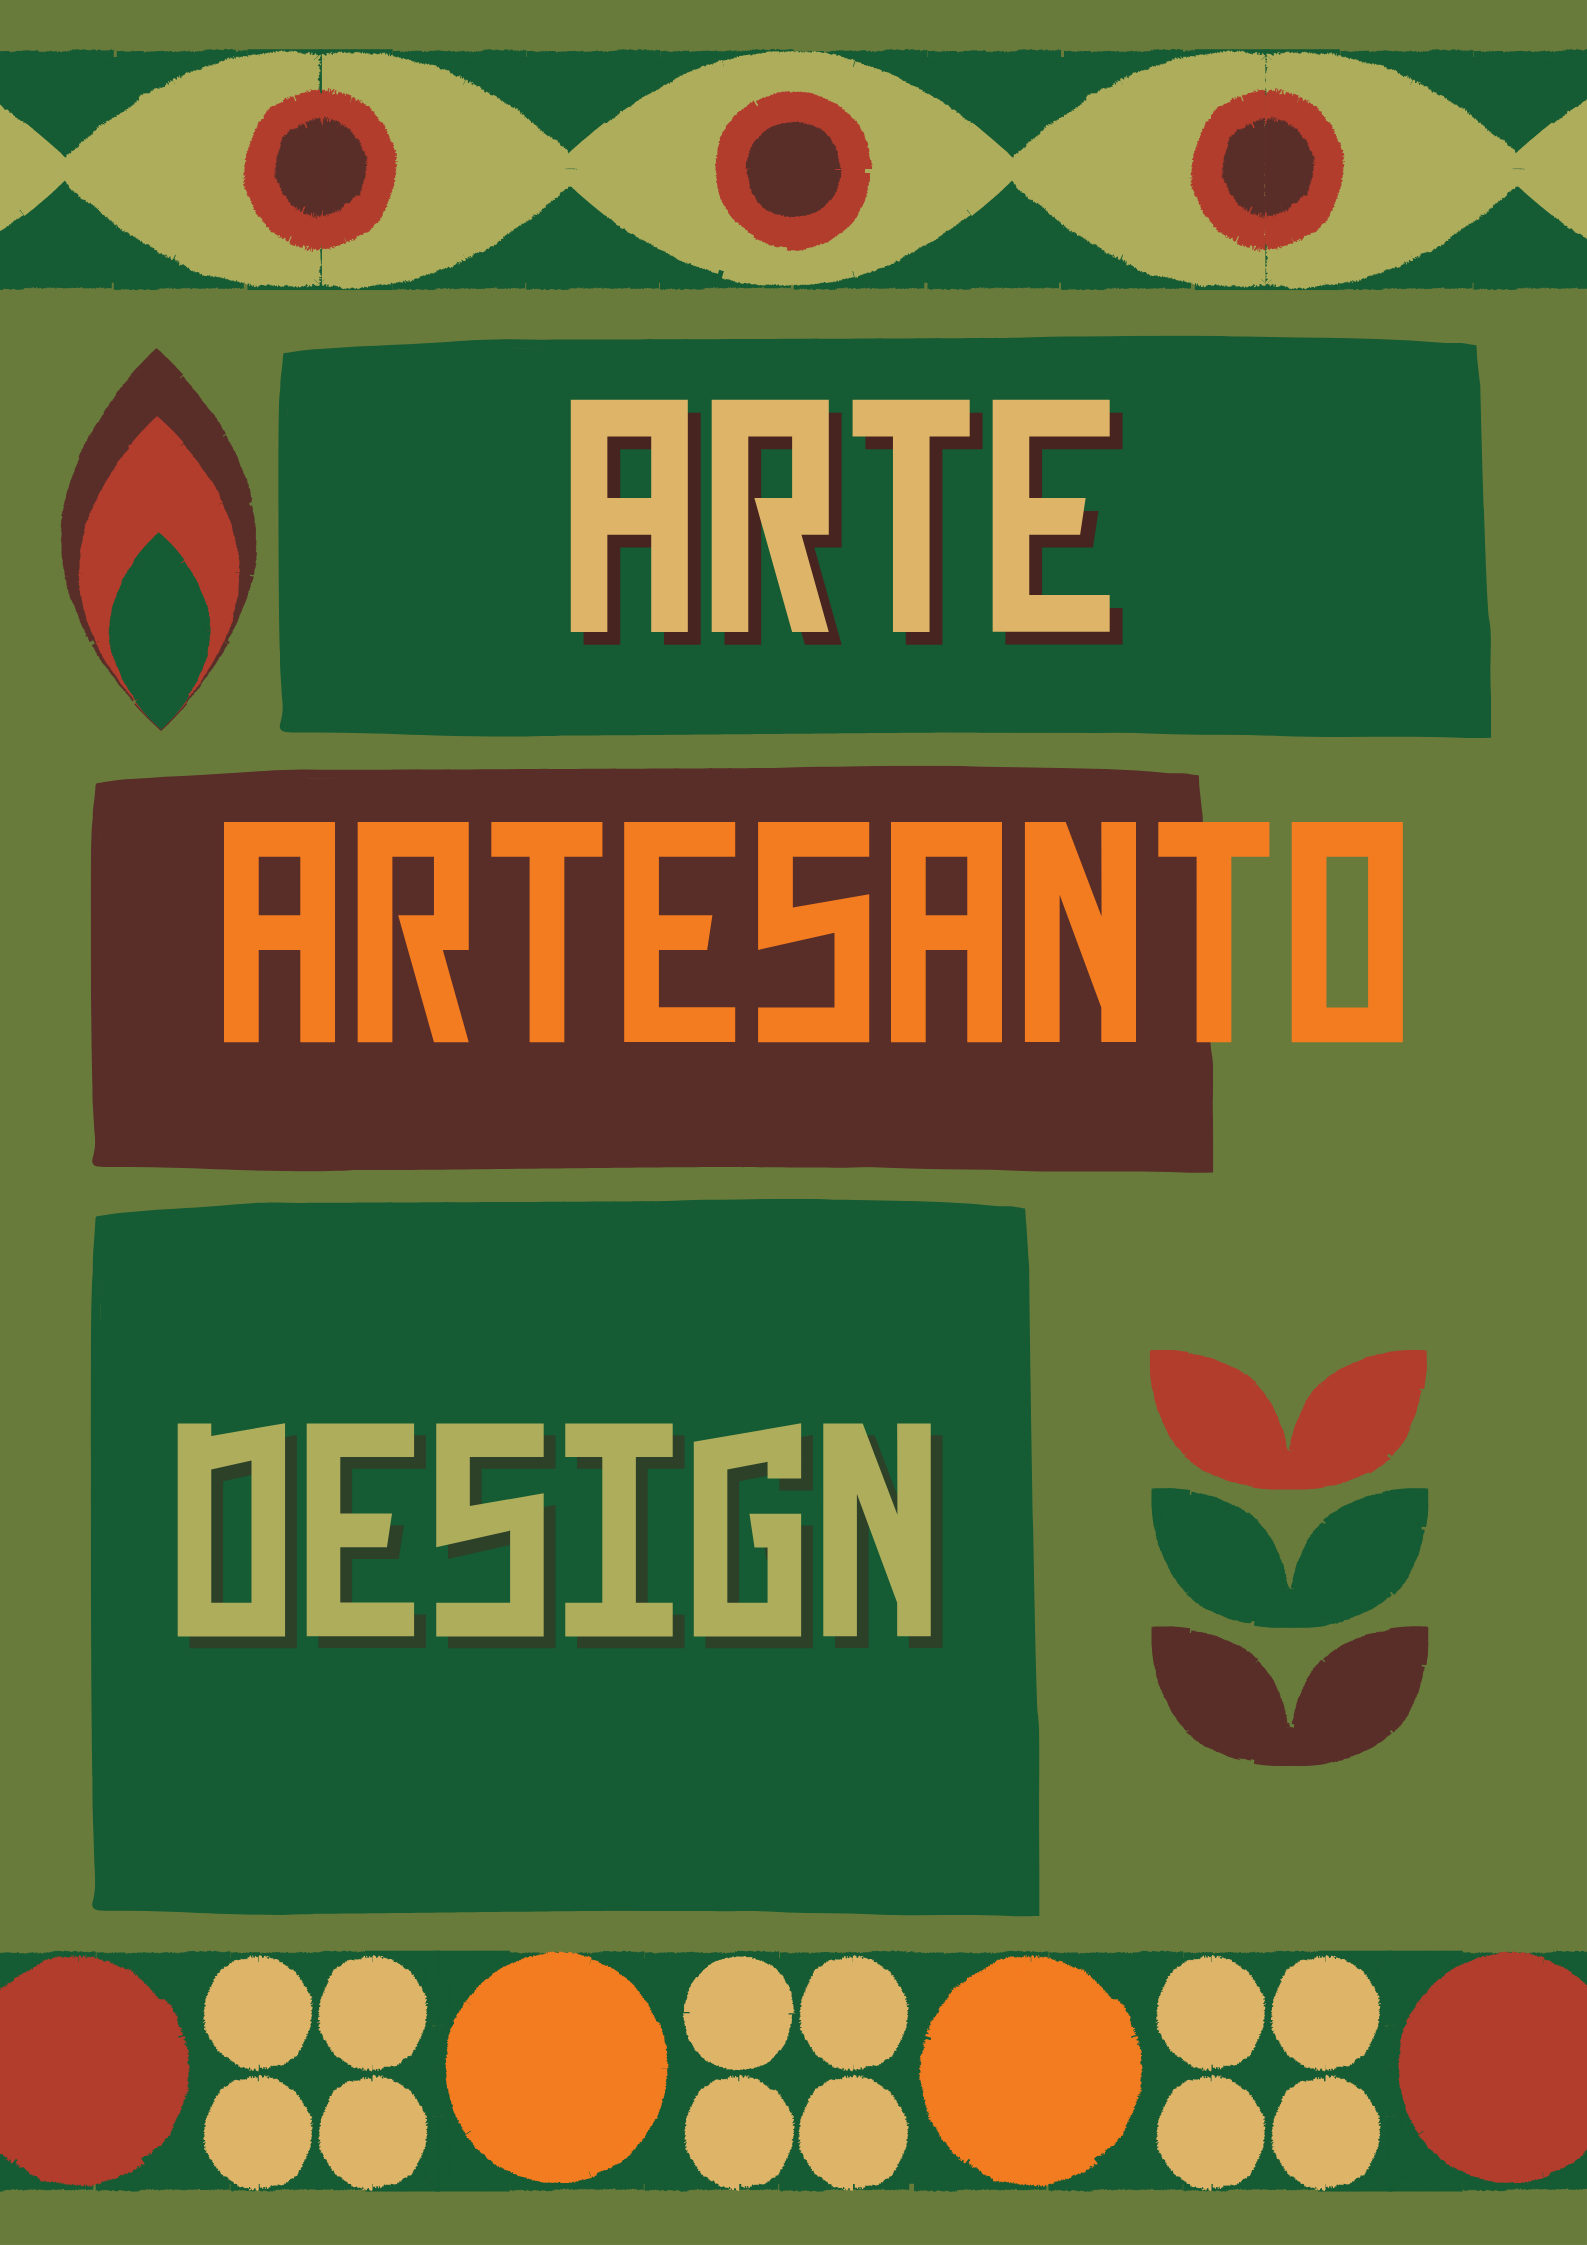 You are currently viewing Arte/Artes Visuais – Arte, Artesanato e Design